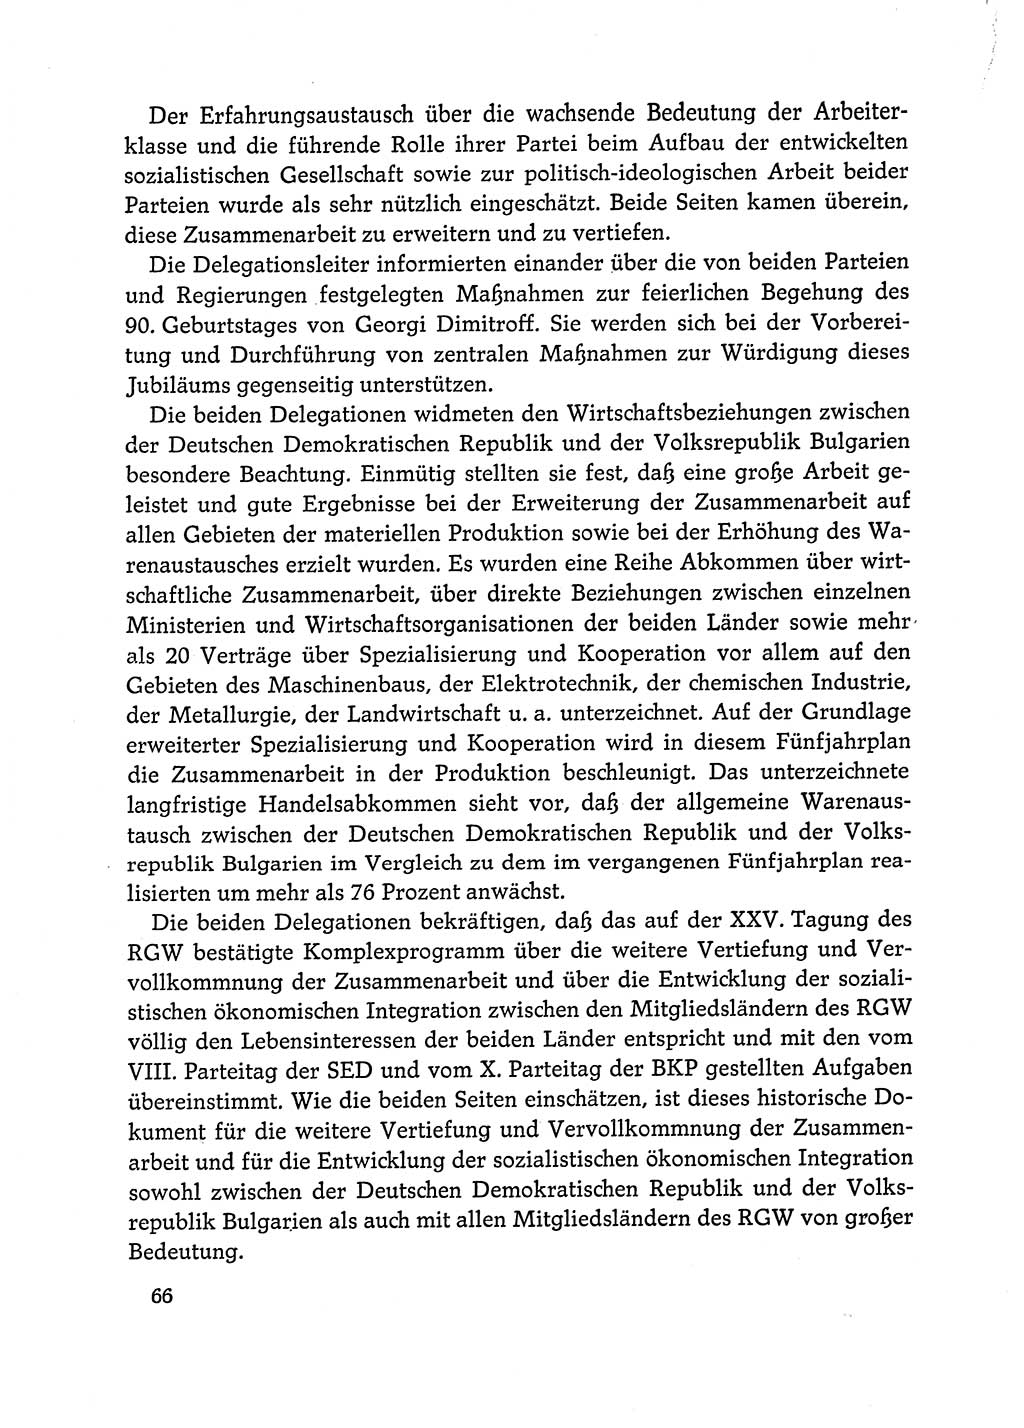 Dokumente der Sozialistischen Einheitspartei Deutschlands (SED) [Deutsche Demokratische Republik (DDR)] 1972-1973, Seite 66 (Dok. SED DDR 1972-1973, S. 66)